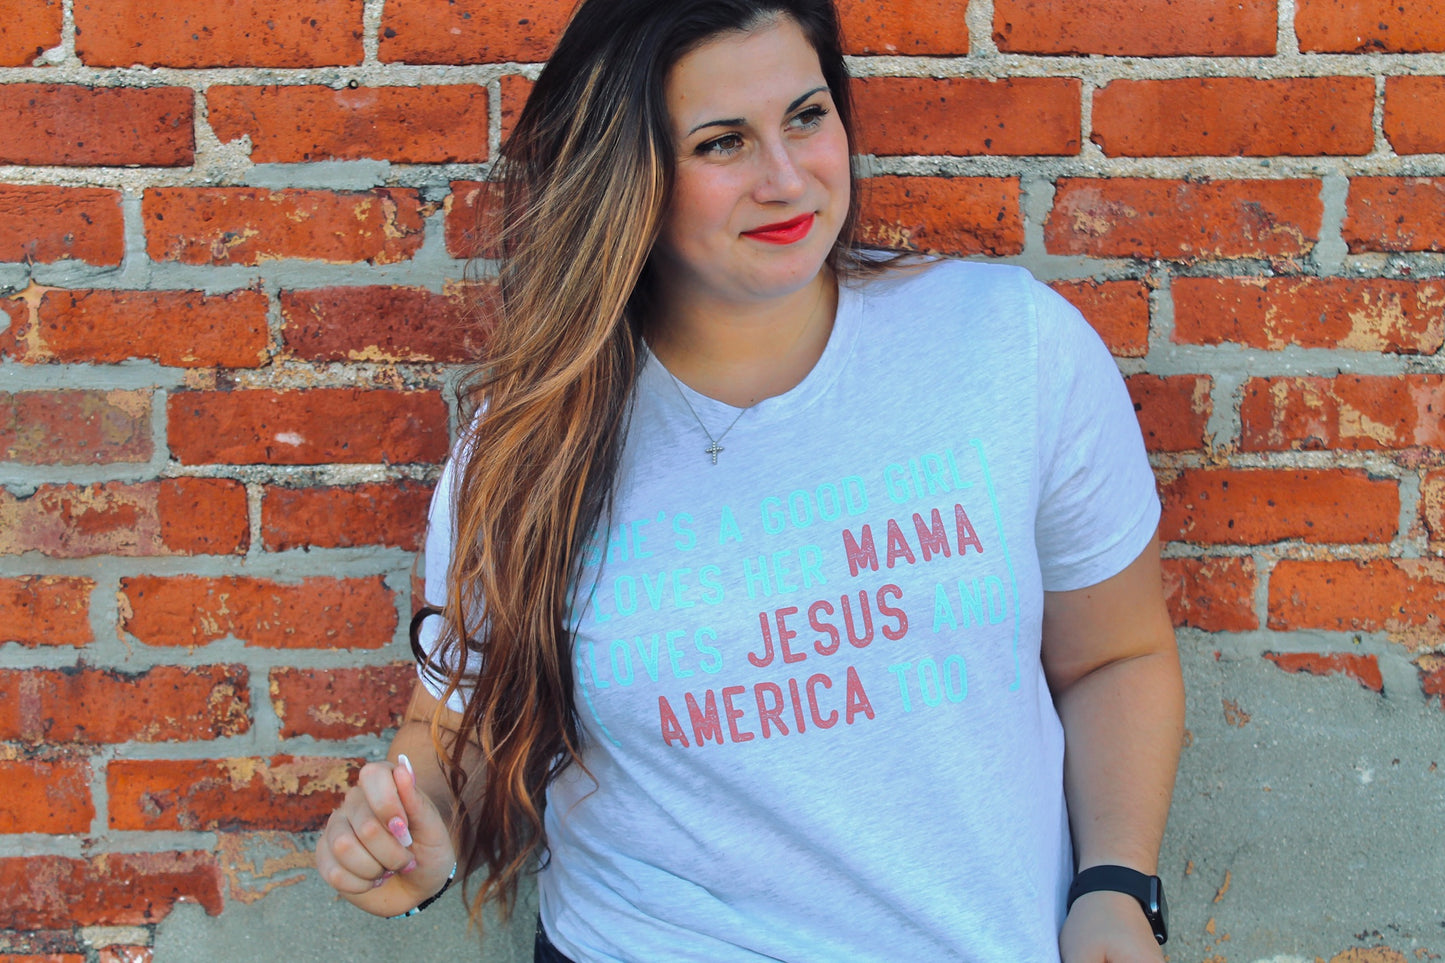 Mama, Jesus, and America Graphic t-shirt